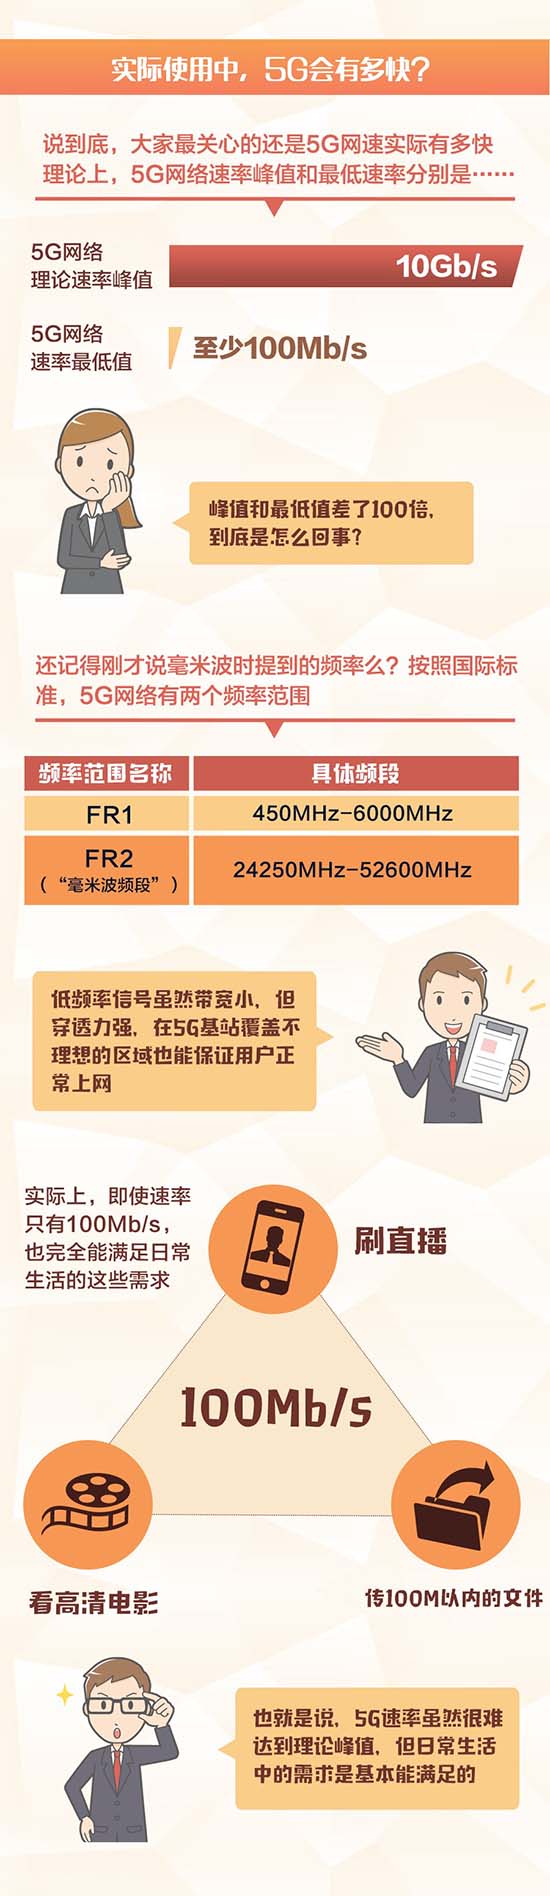 成都市手机号码网中国联通5G全方位助力全国两会报道